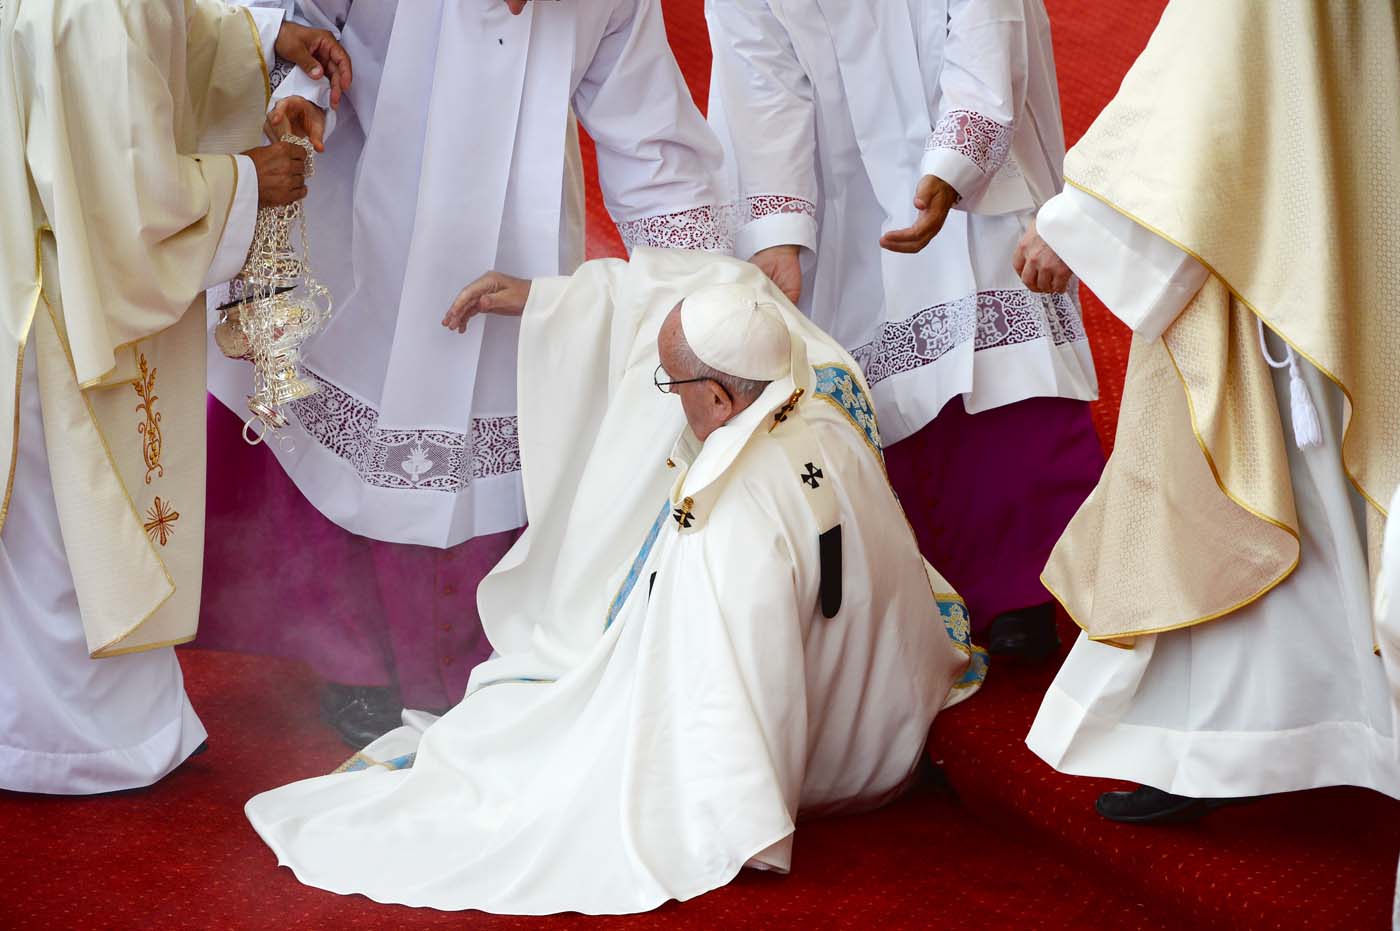 El Papa se cayó durante la misa en el santuario de Polonia (Fotos y video)